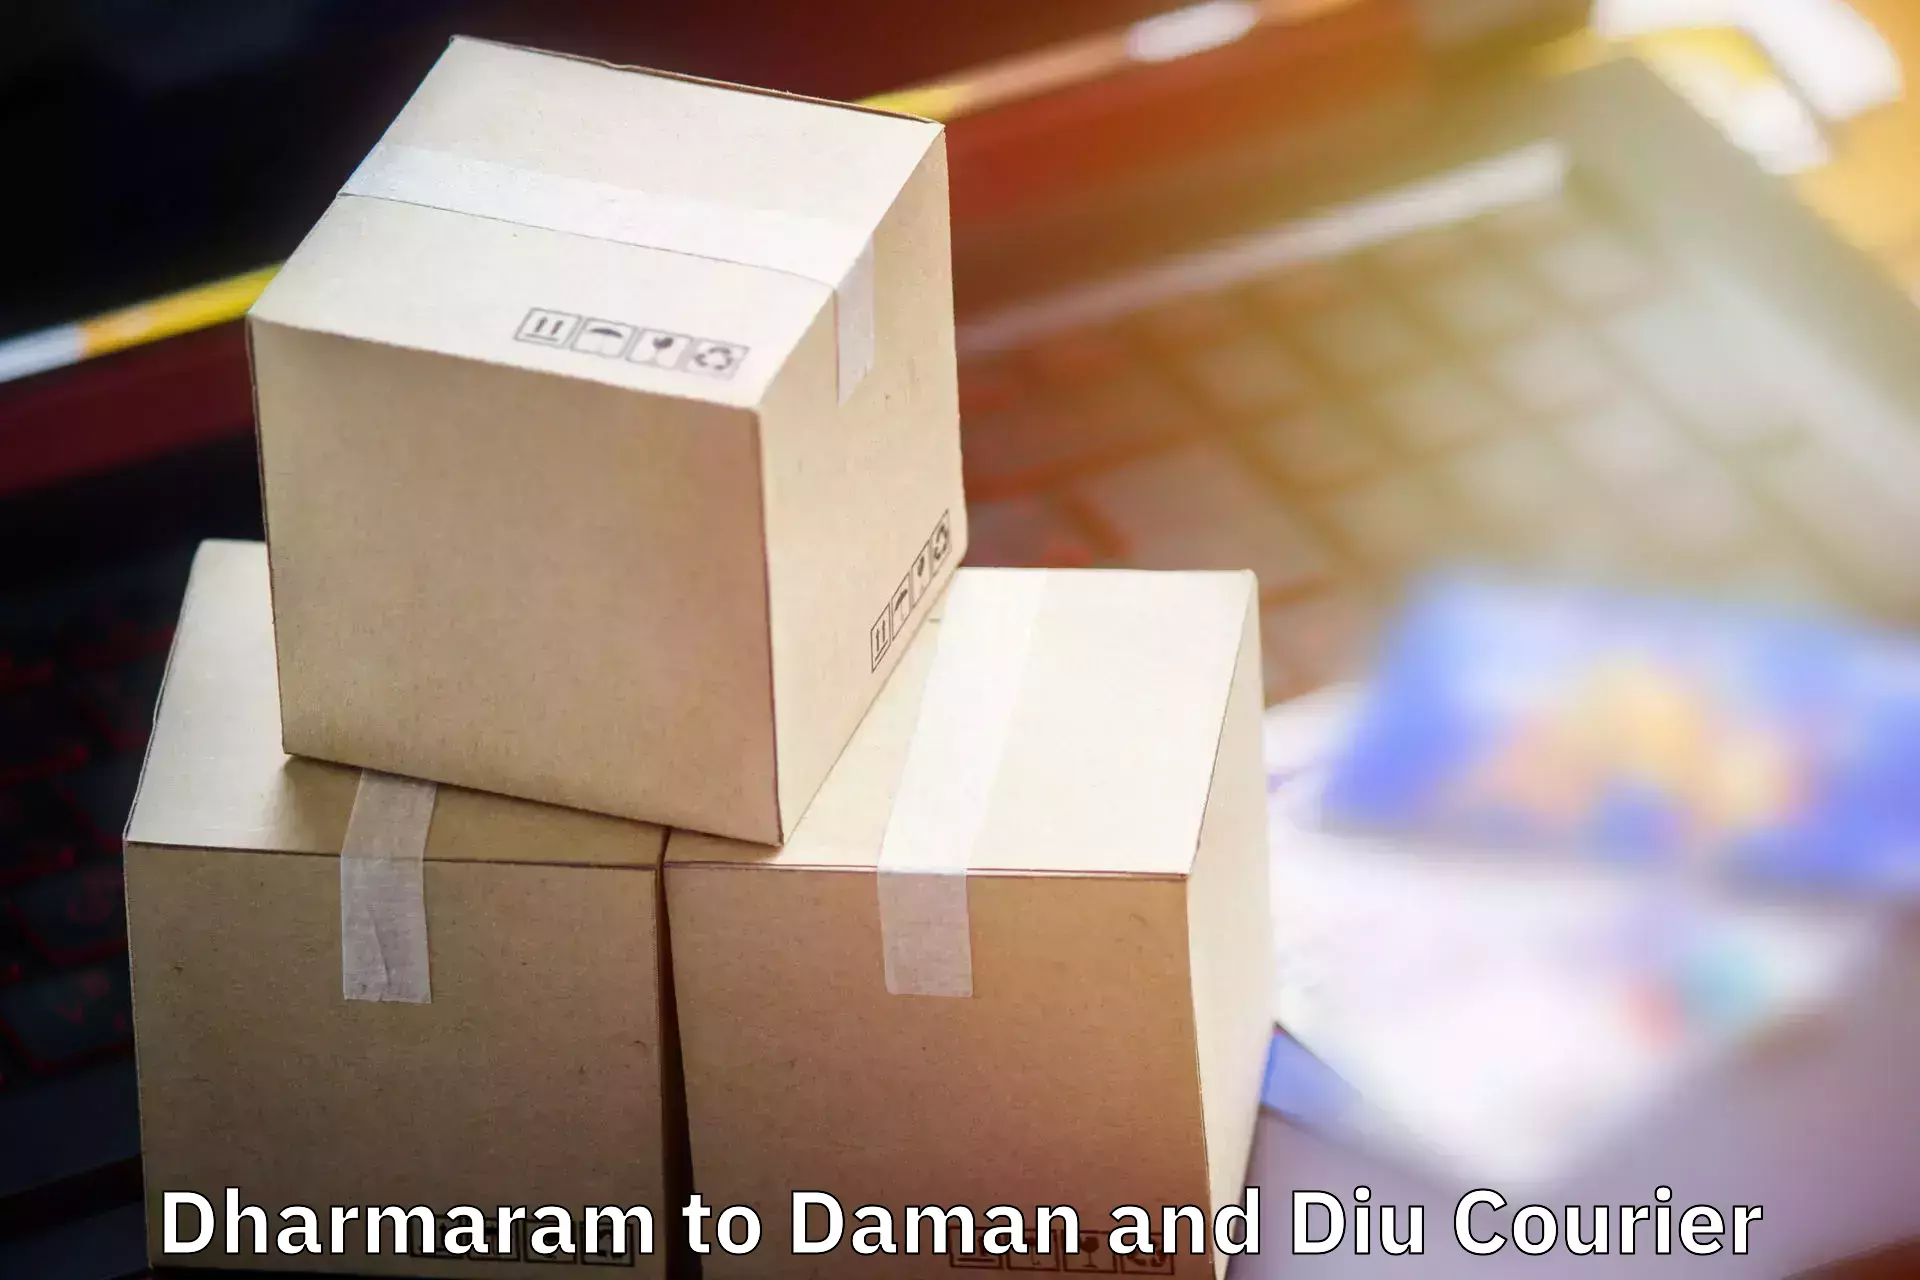 Baggage shipping calculator in Dharmaram to Diu